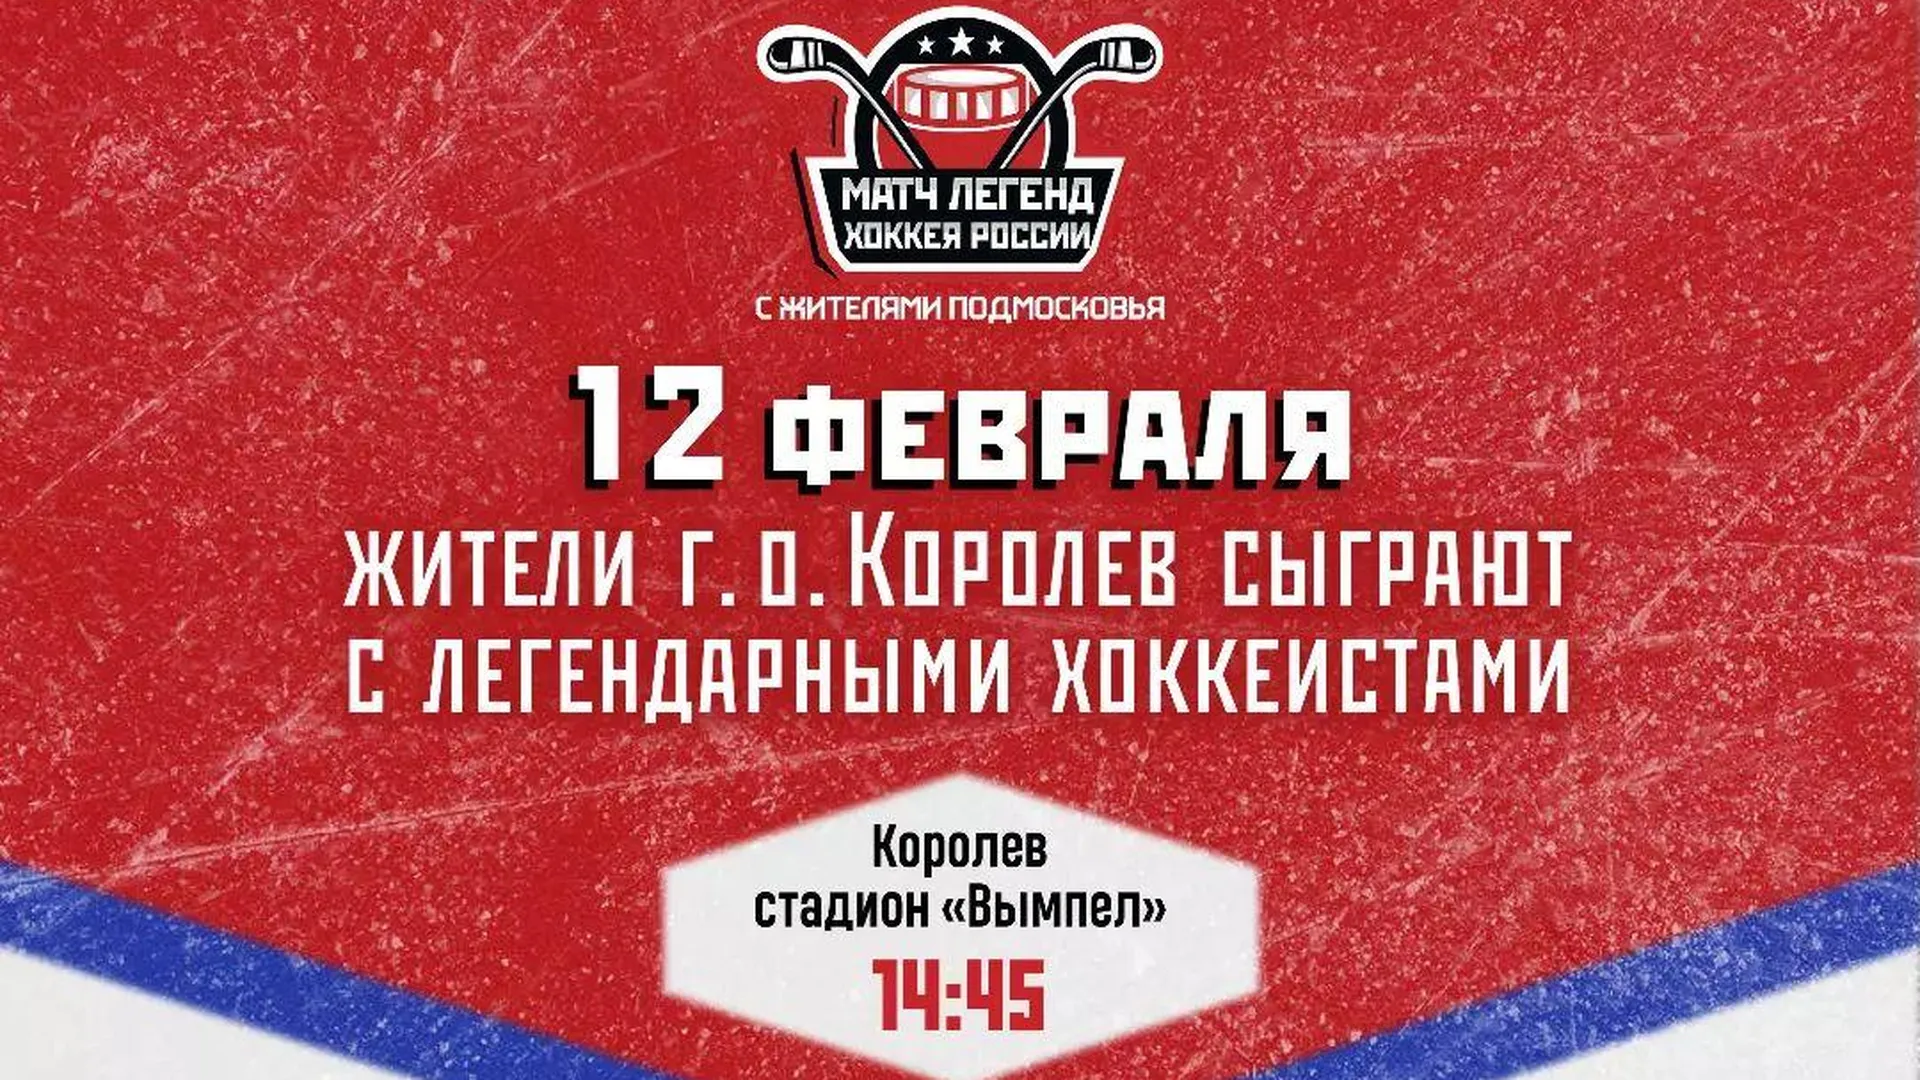 Фетисов и Прохоров в составе команды легенд хоккея сыграют с жителями в Королеве